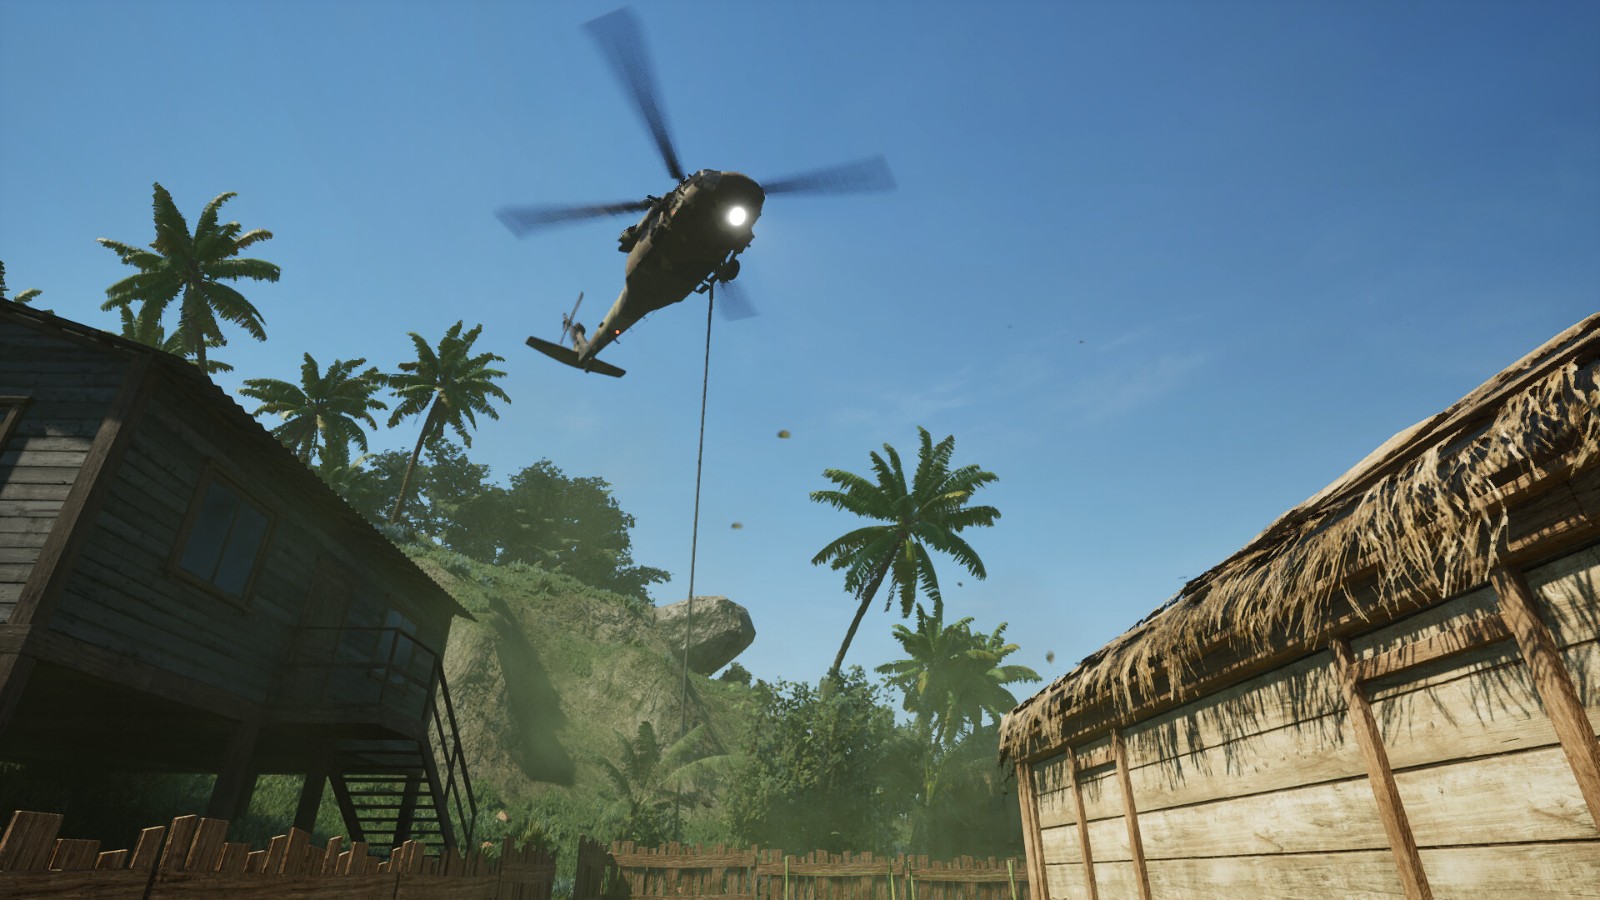 《模擬毒販2》將於6月21日發售 將加入近戰戰鬭系統